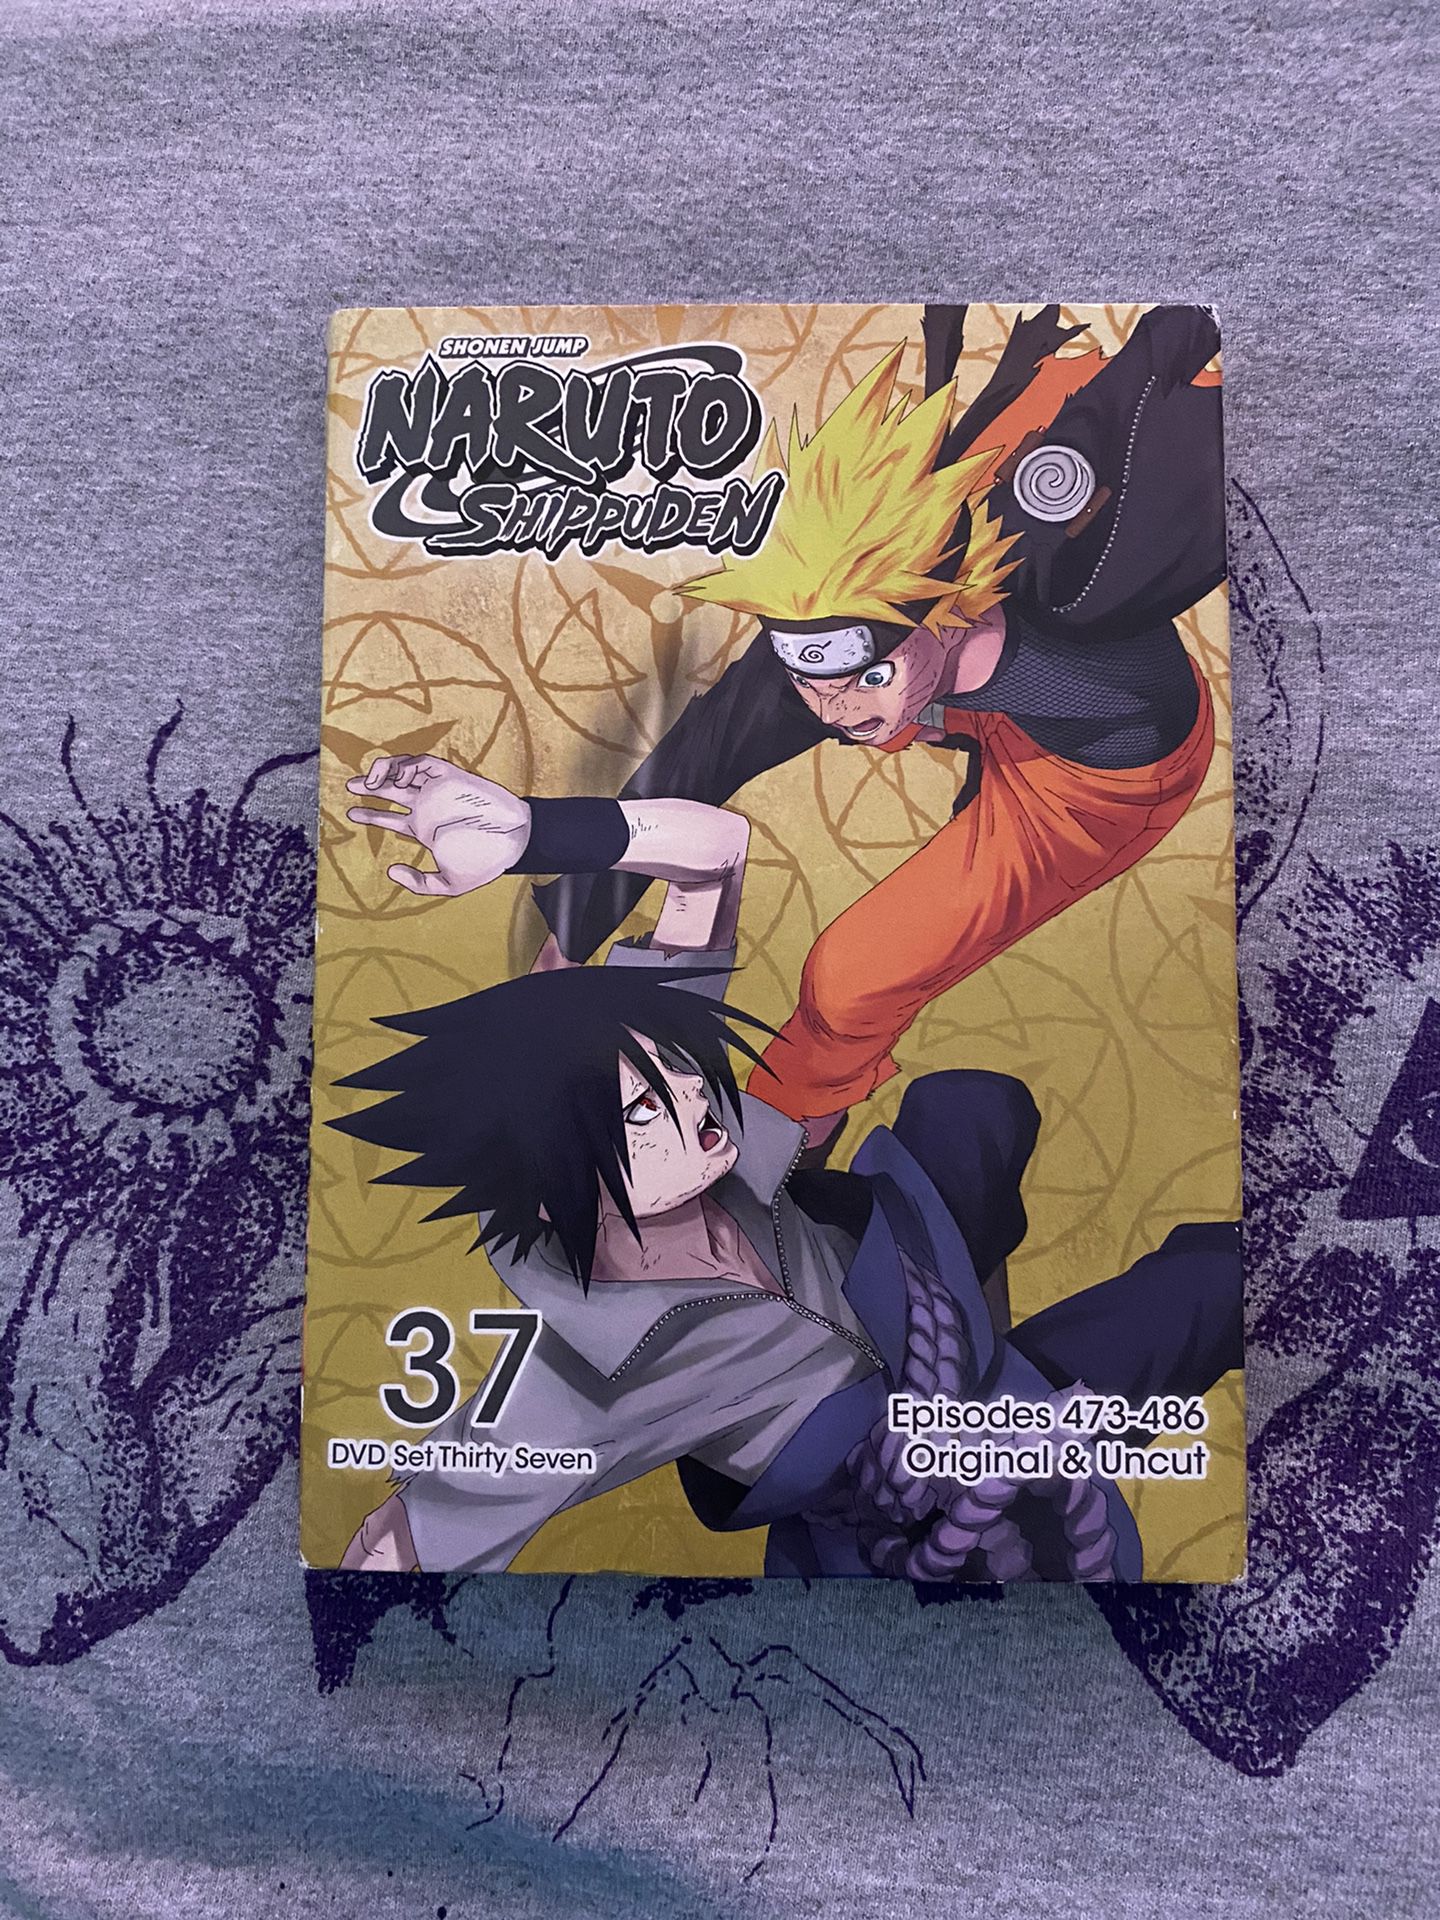 Naruto Shippuden DVD Set 37